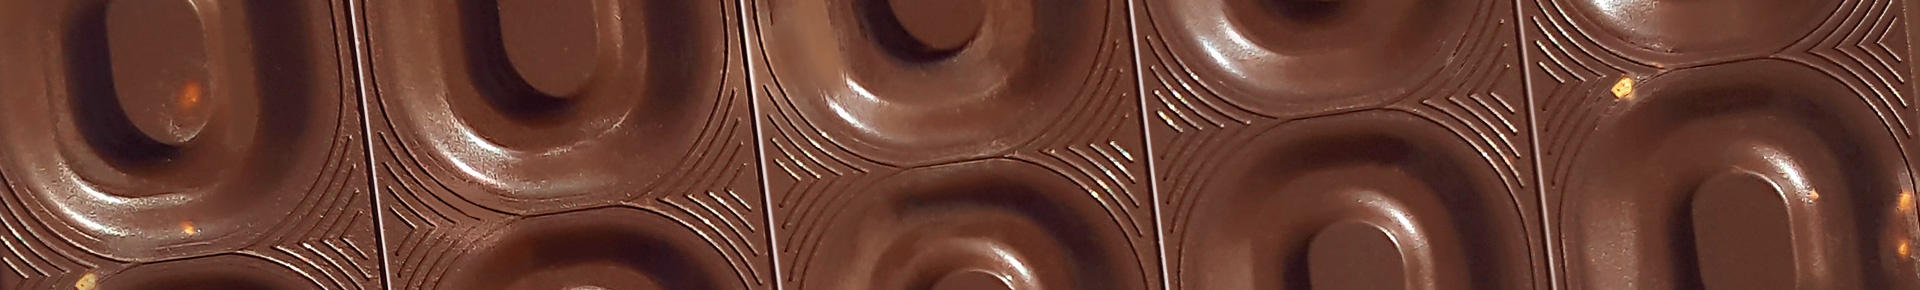 Tavoletta di cioccolato fondente noci e lamponi di Perugina